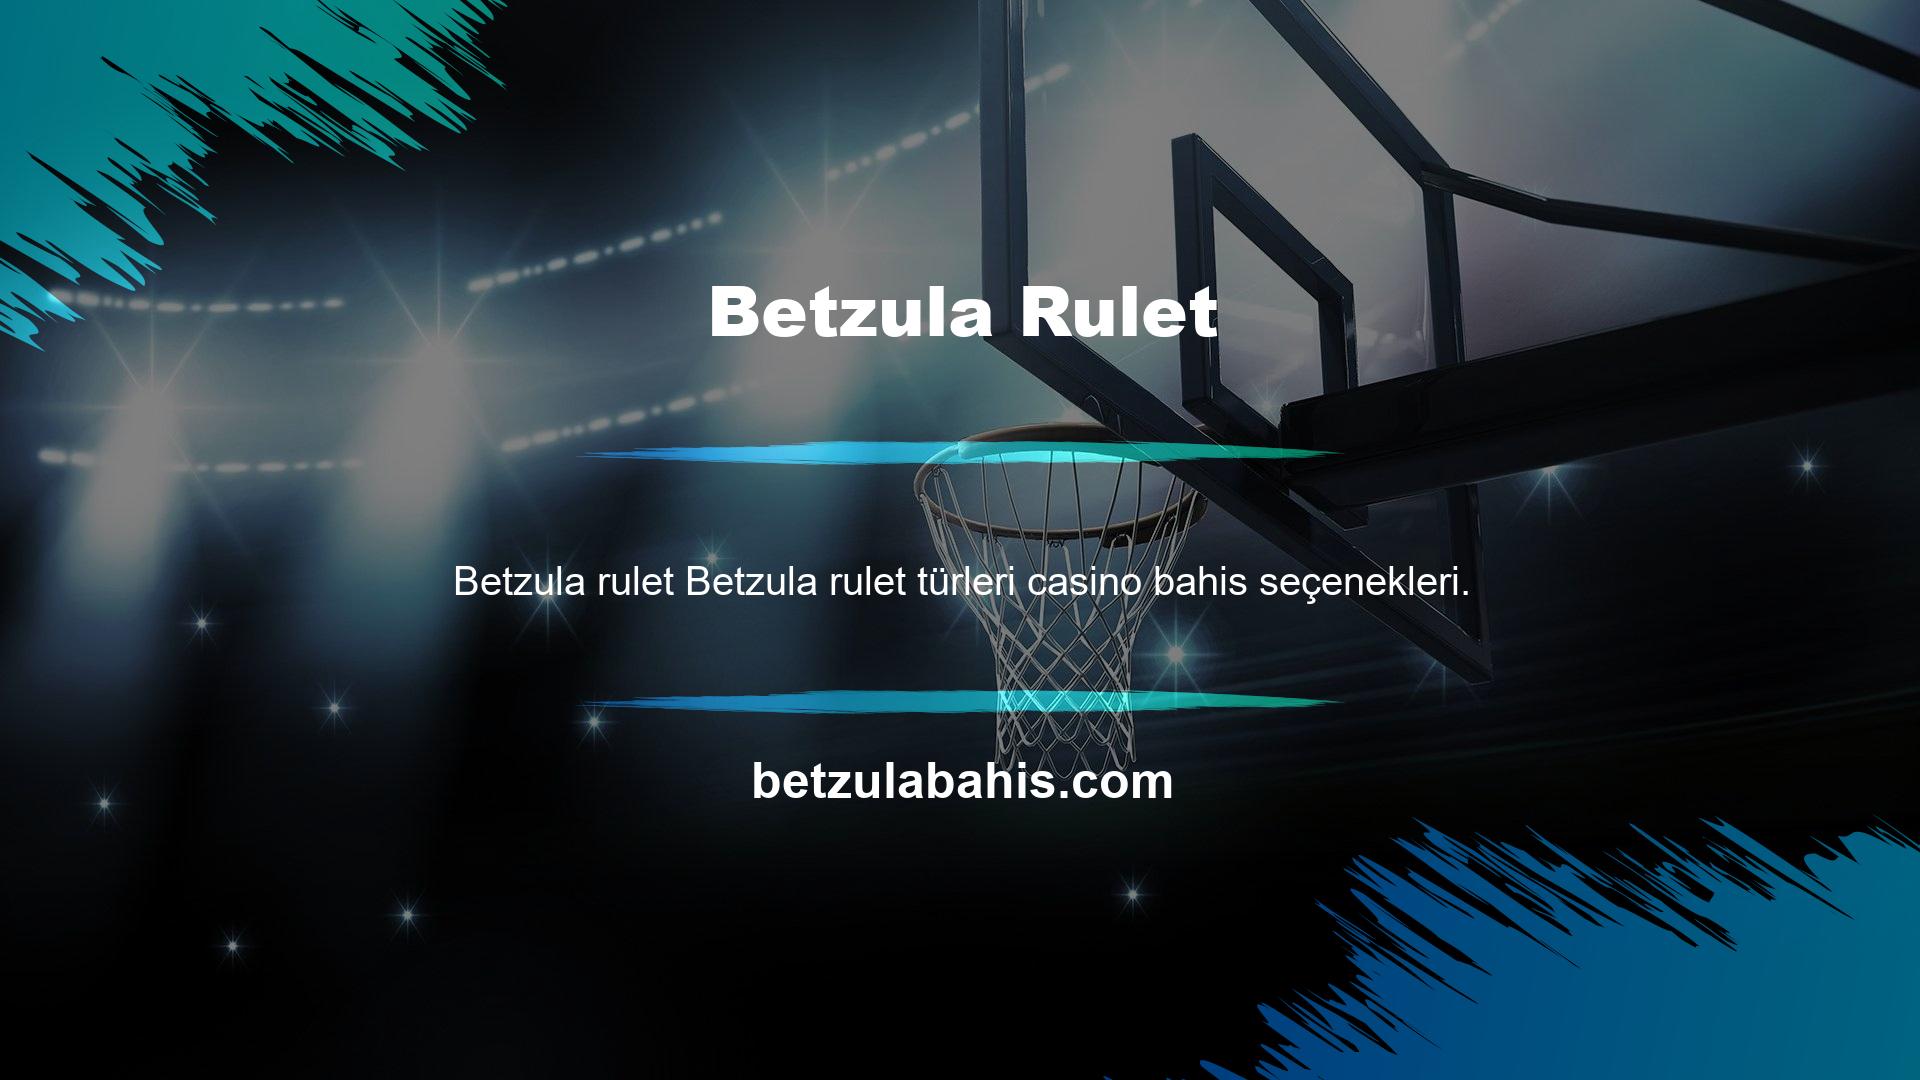 Betzula Casino değerli bahis yatırımcılarını bekleyen bir bahis şirketidir